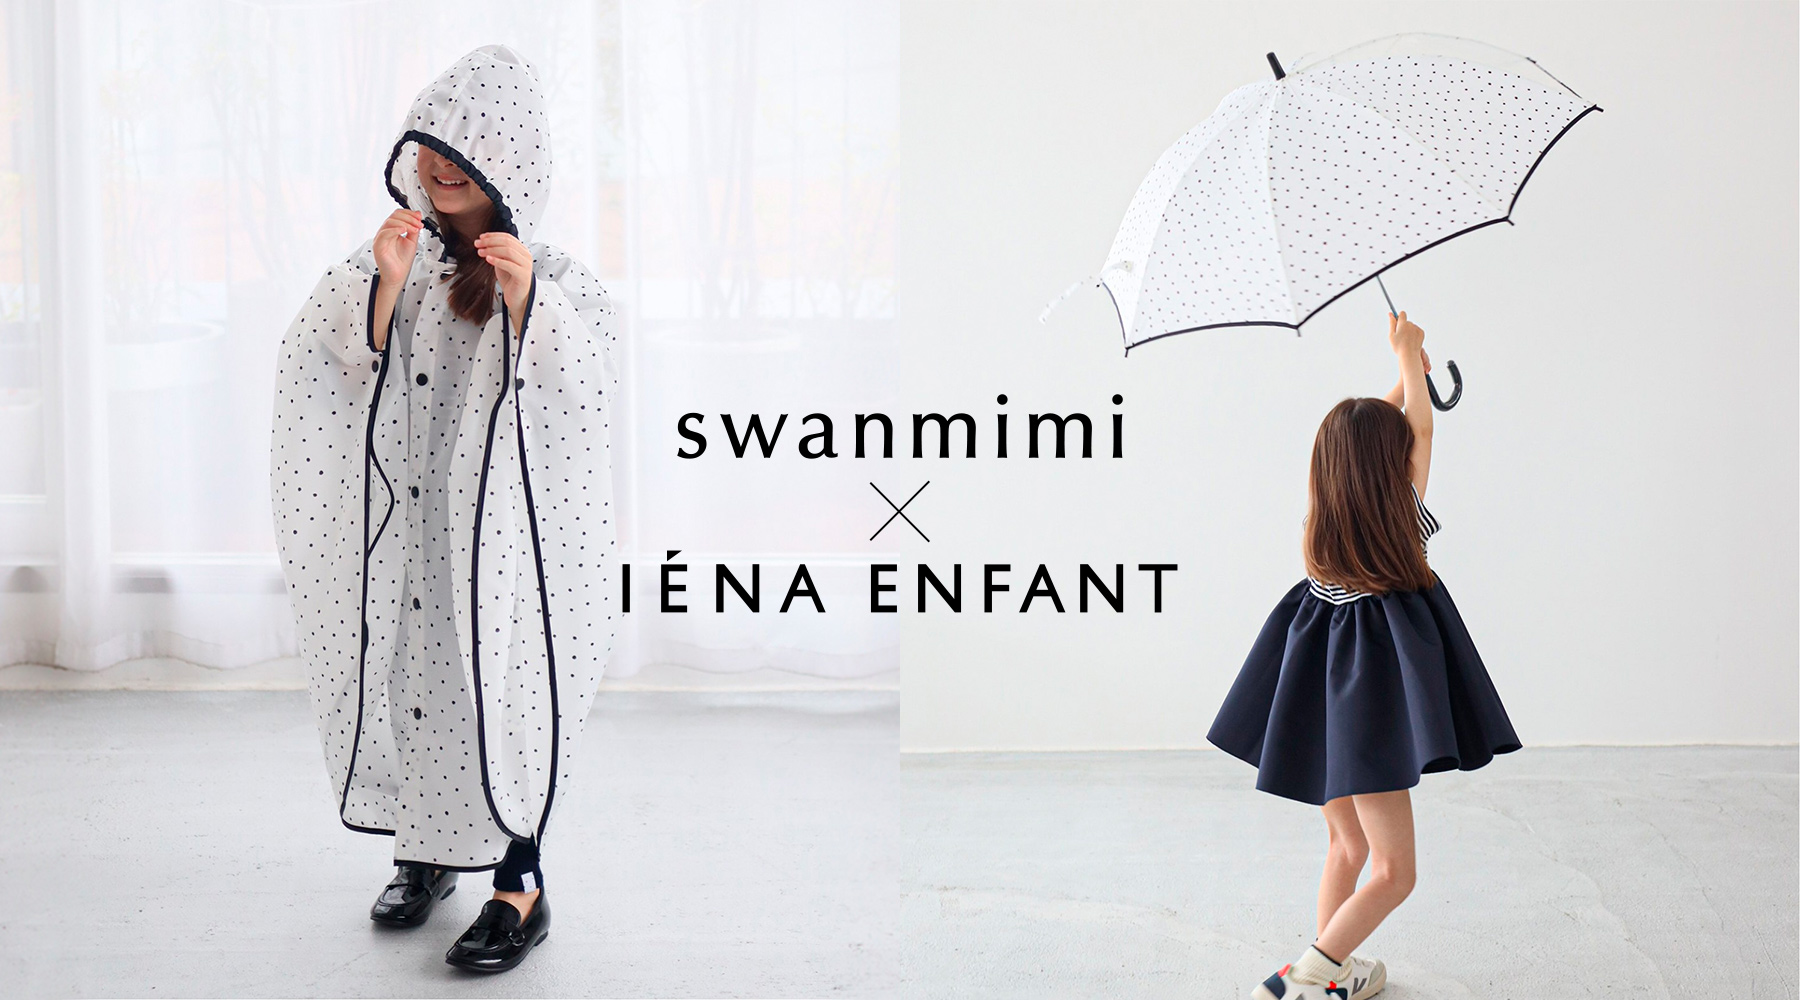 「swanmimi」のレイングッズがIENA初のベビー&amp;キッズライン「INA ENFANT」とのコラボアイテムを発売